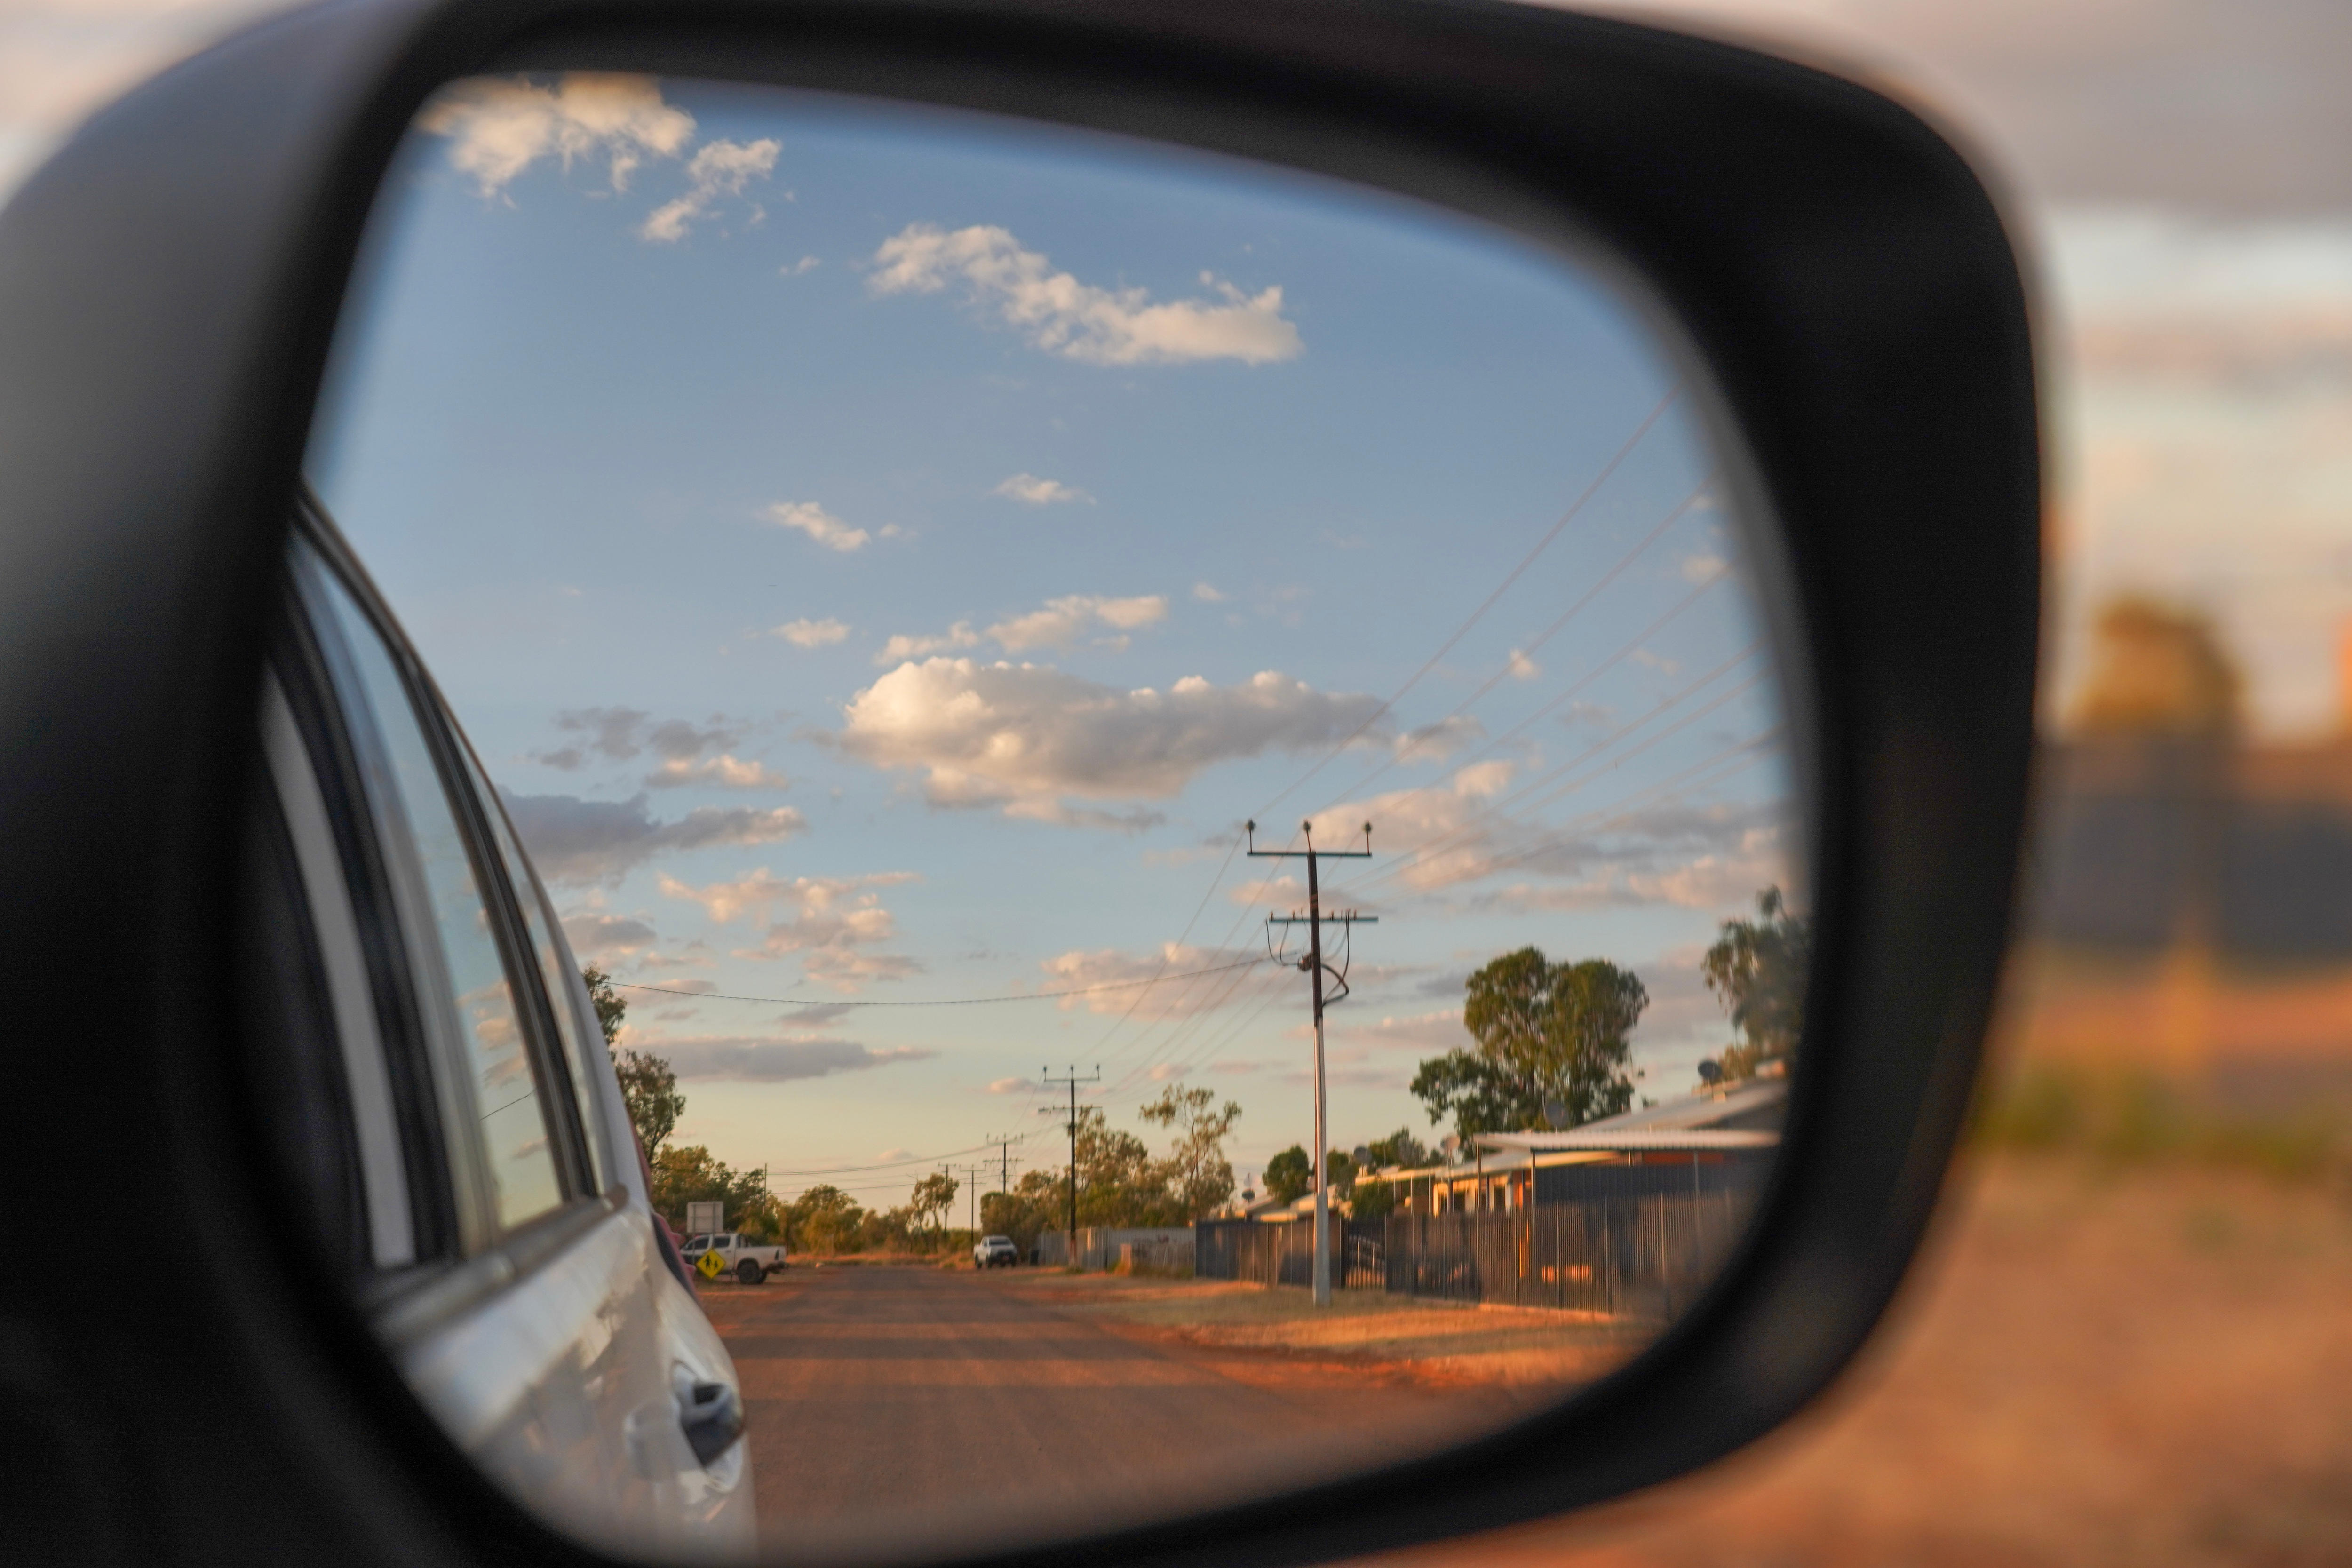 Dirt road through car mirror